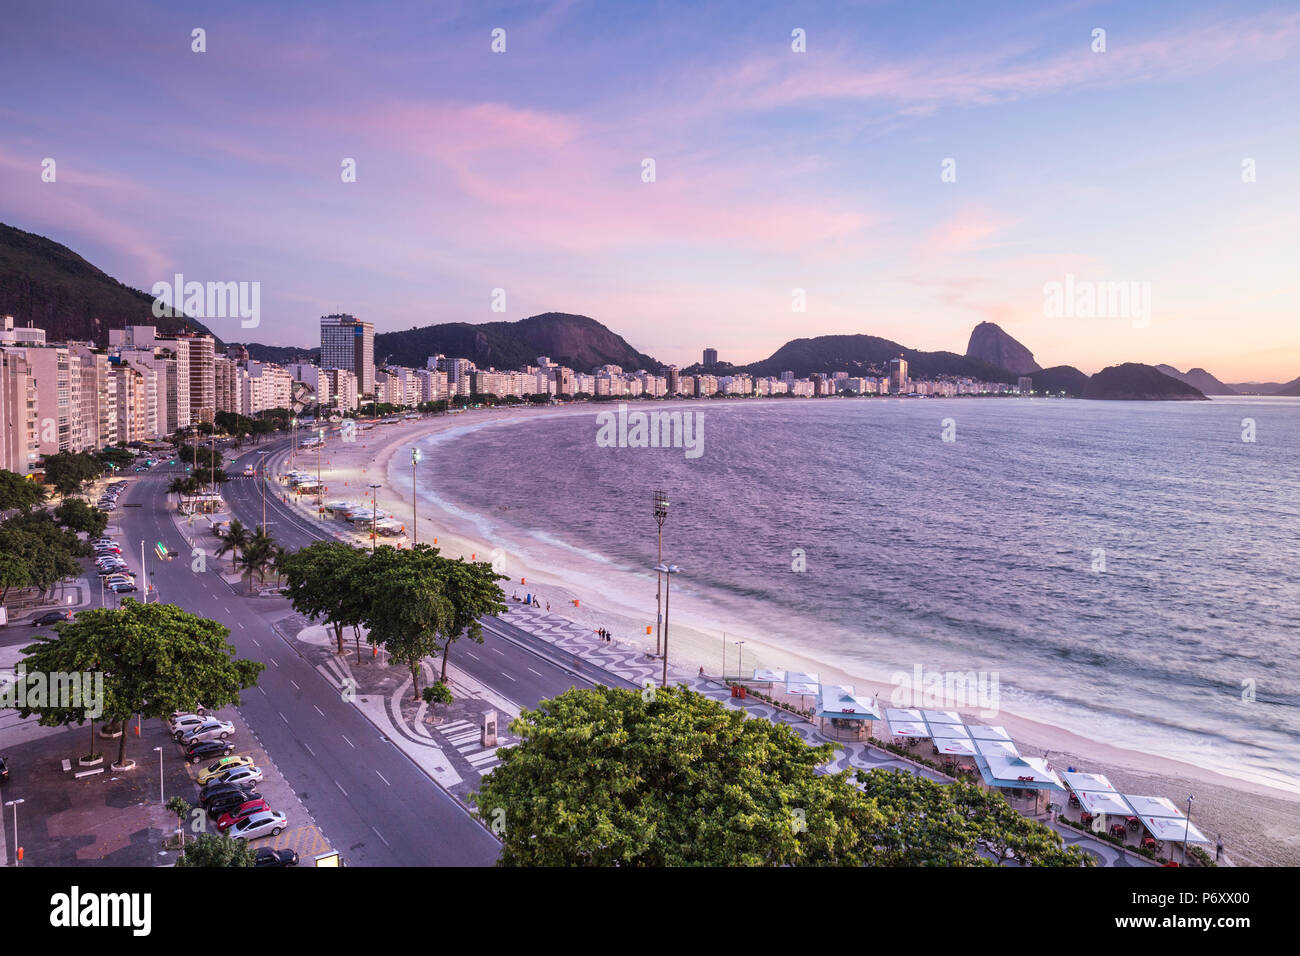 La plage de Copacabana, Rio de Janeiro, Brésil Banque D'Images